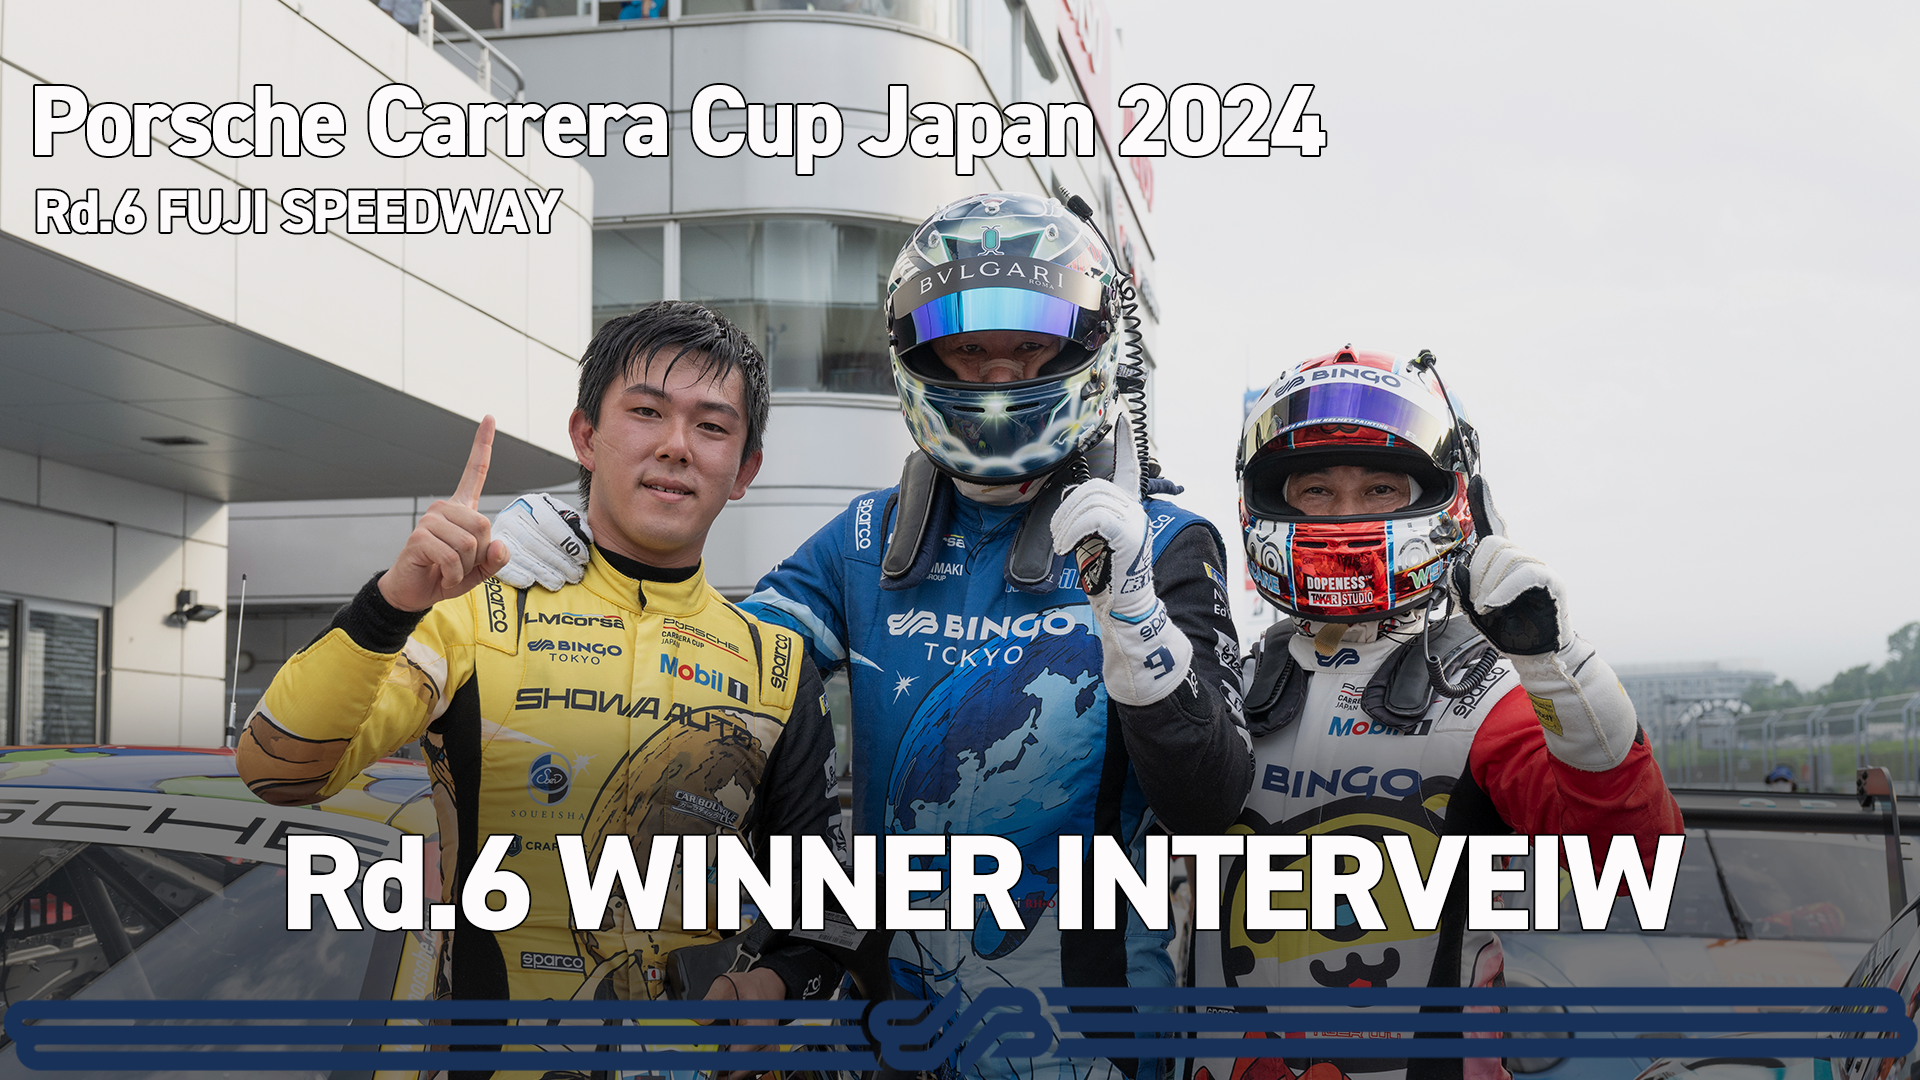 【Porsche Carrera Cup Japan 2024】Rd.6 WINNER INTERVIEW